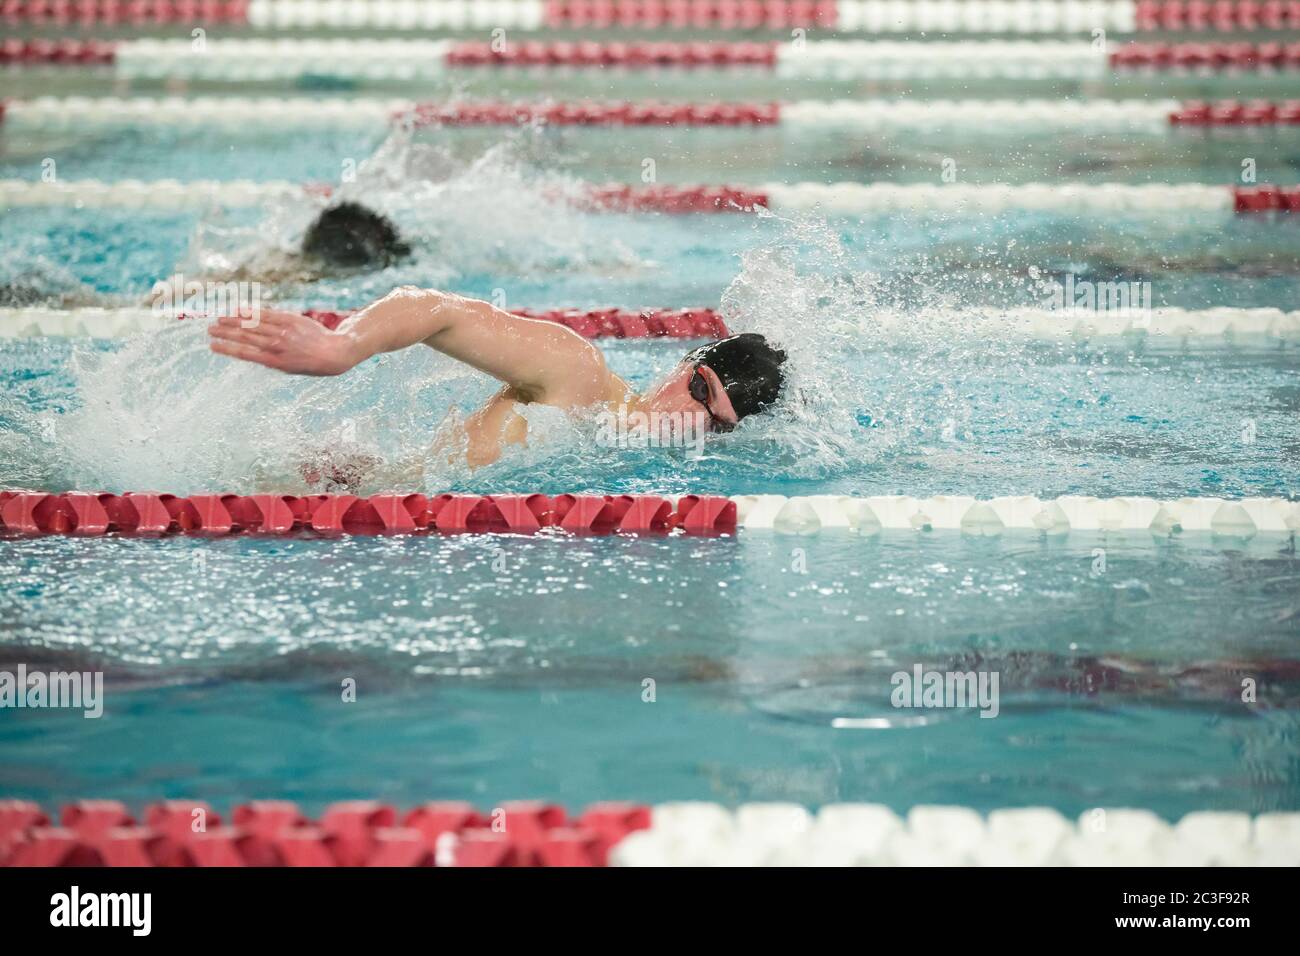 Un jeune nageur de l'école secondaire naque nage libre pendant une rencontre de natation Banque D'Images